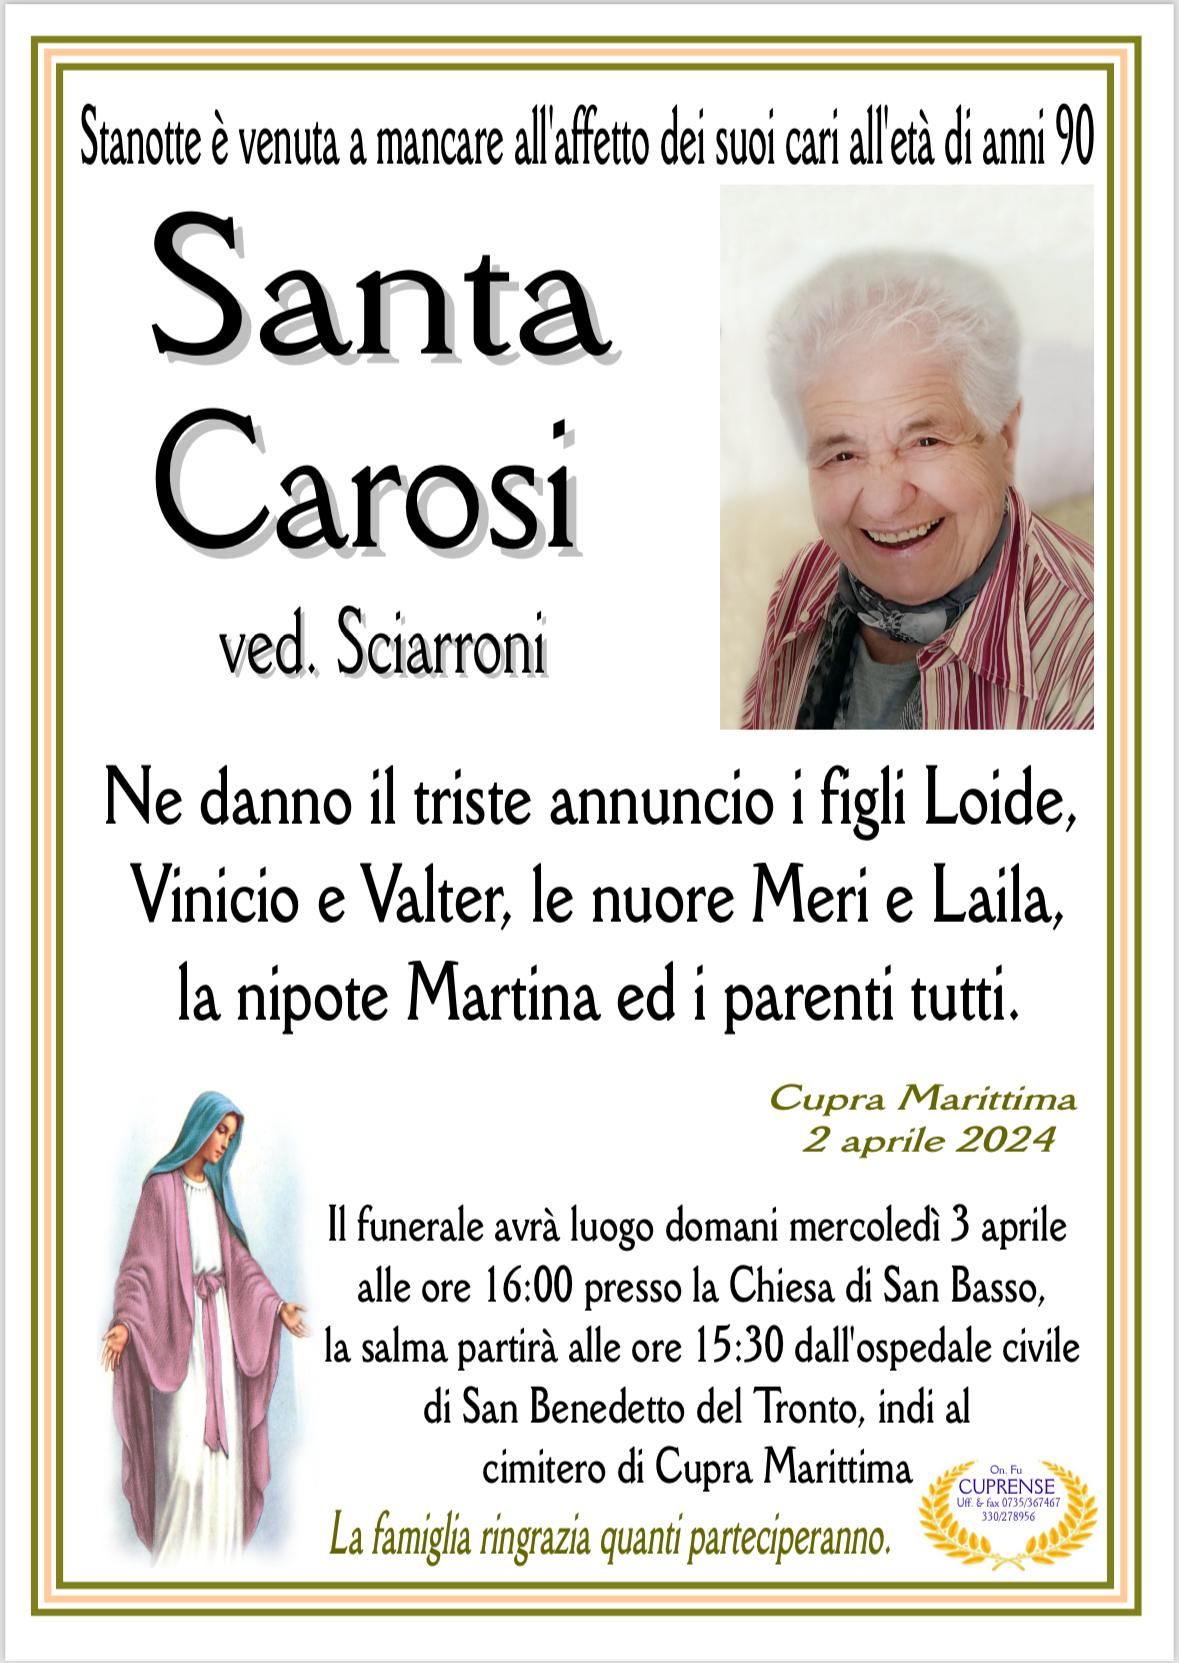 Santa Carosi